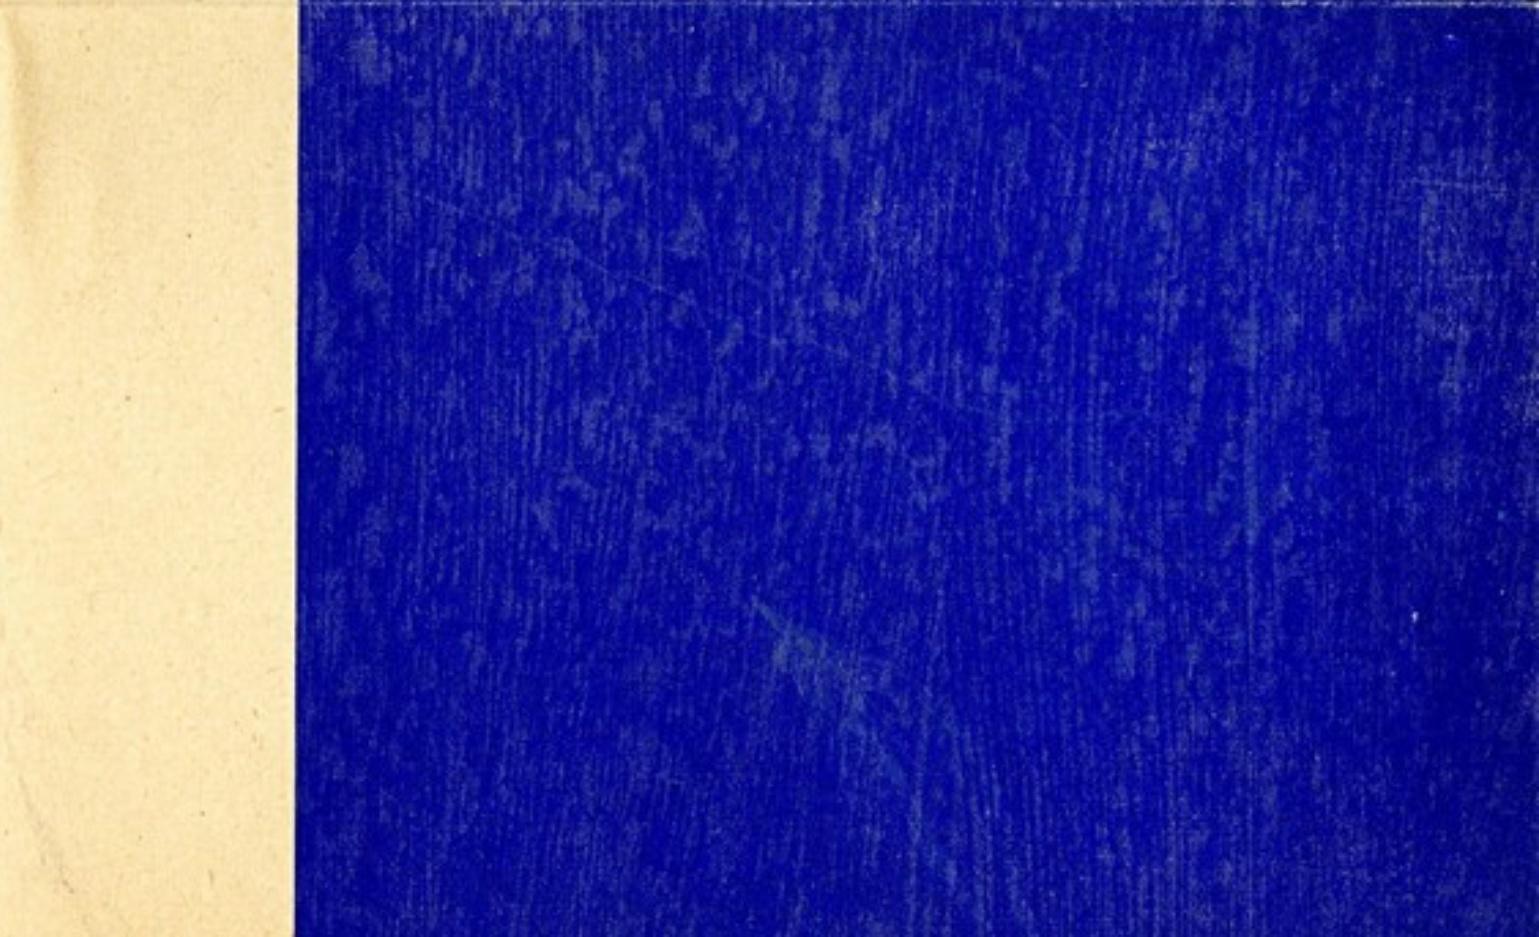 Yves Klein
Yves Klein Propositions Monochromes avec IKB (International Klein Blue), 1957
Rarissime invitation vintage sérigraphiée dépliante avec IKB pour l'exposition de la Galerie Schmela
8 1/4 × 11 3/4 pouces
Invitation originale pour